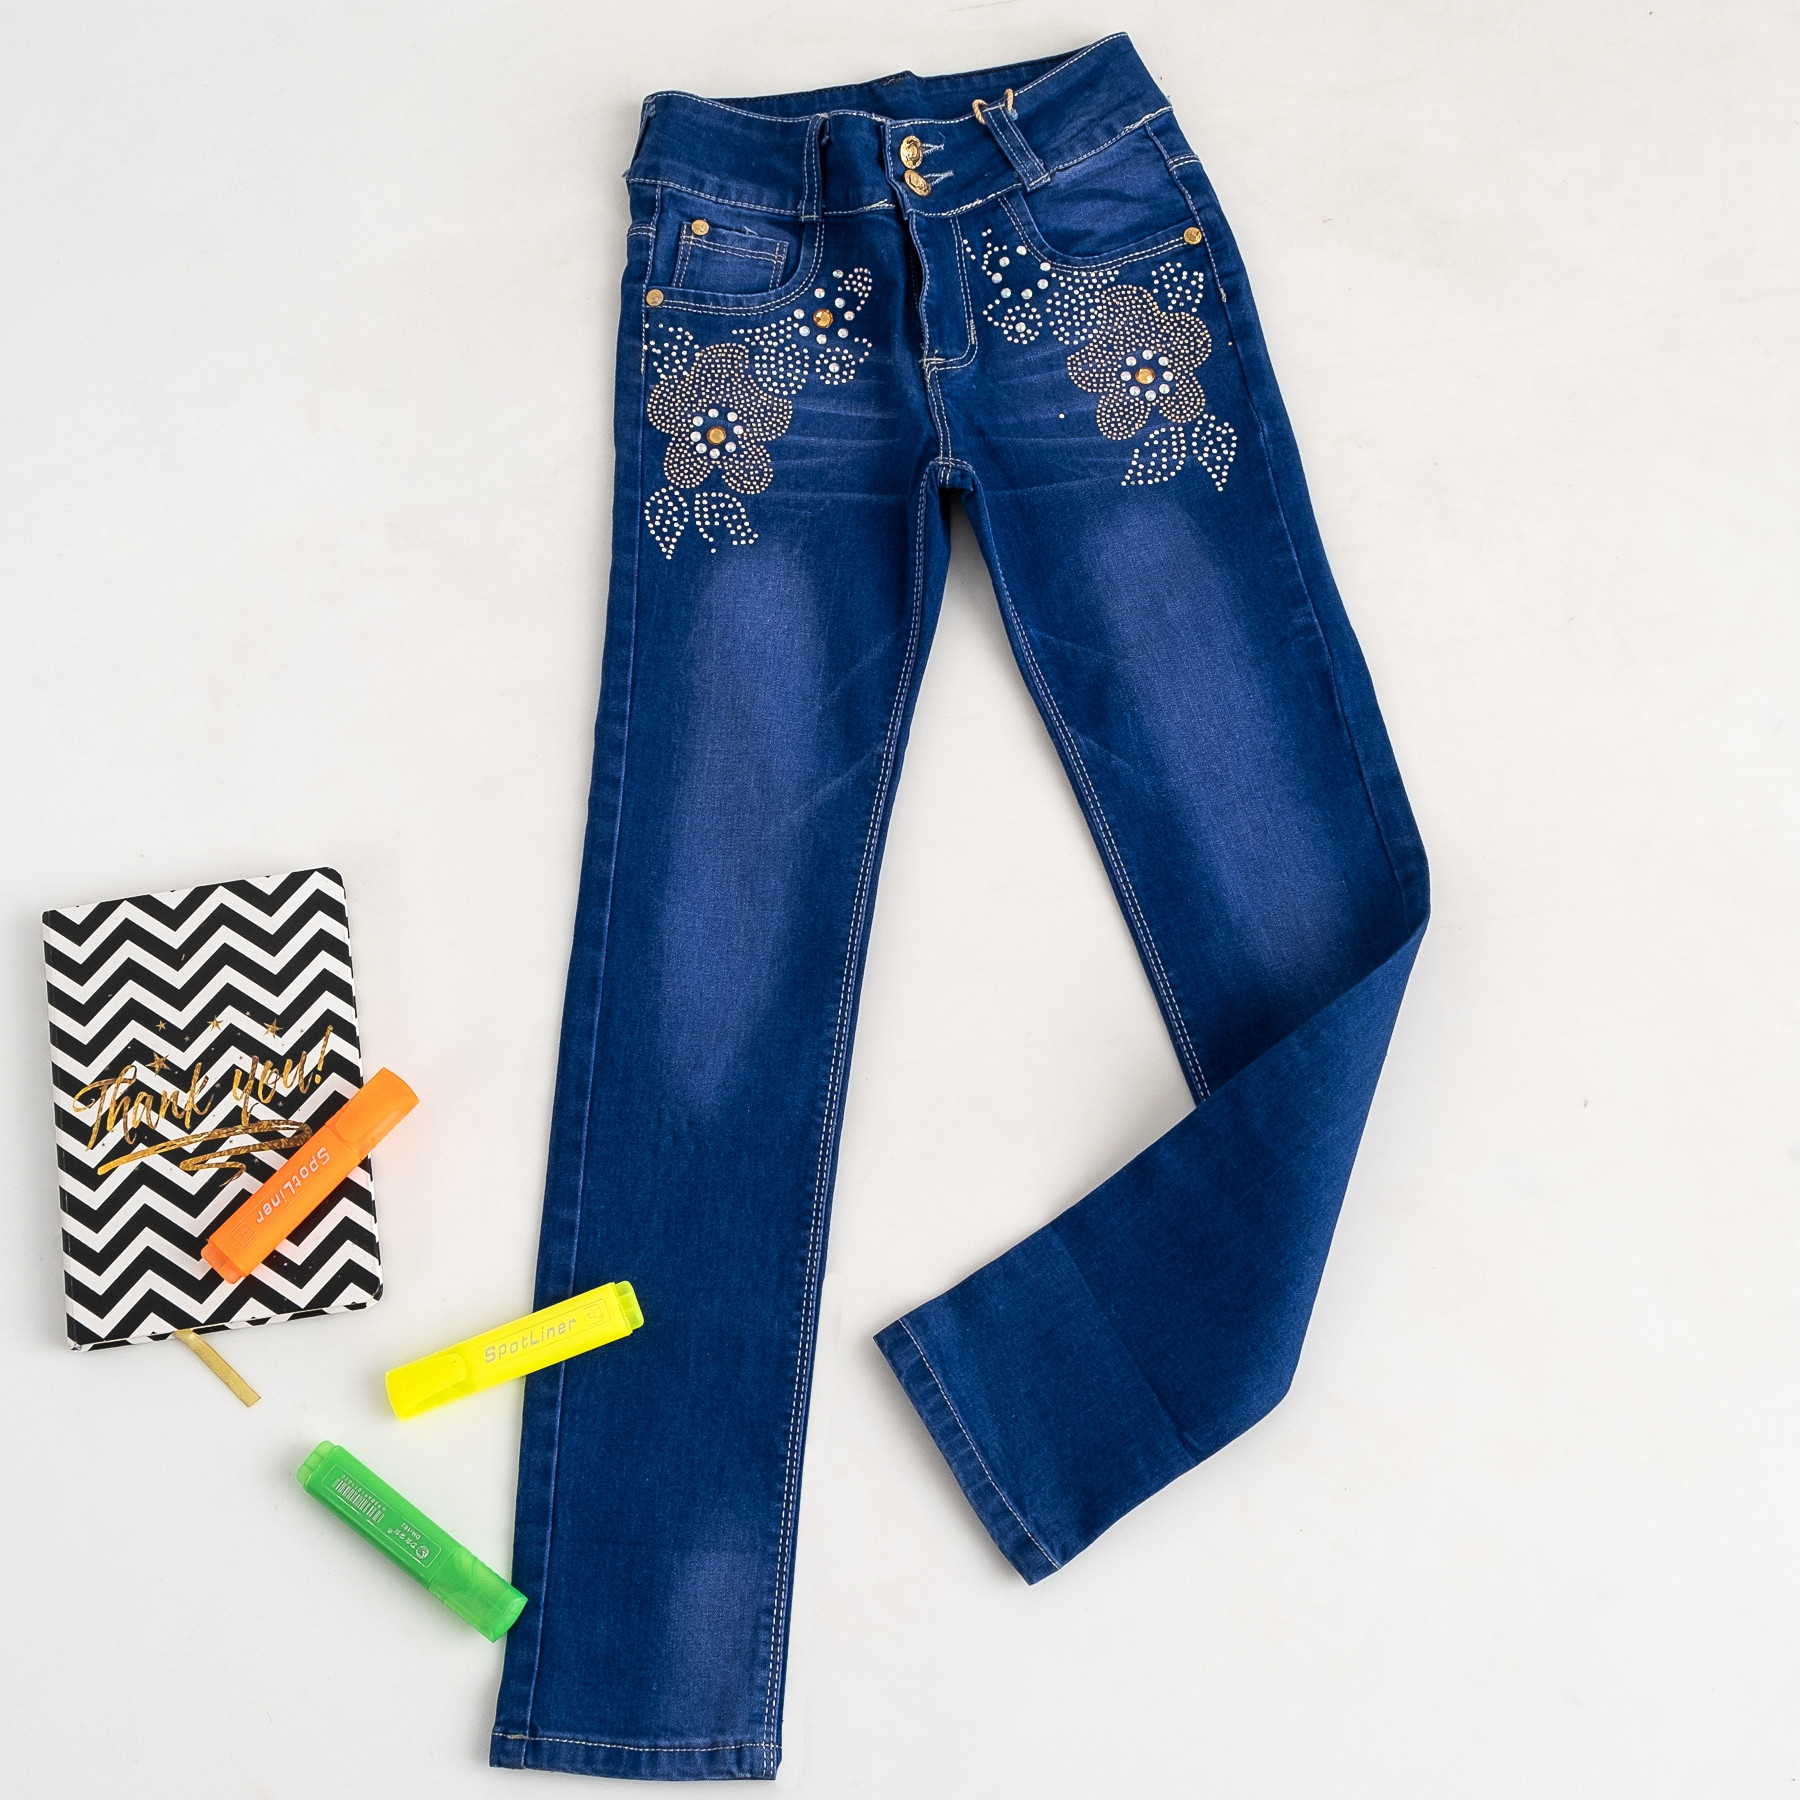 0711 Fashion джинсы синие на девочку 5-10 лет стрейчевые (6 ед. размеры: 23.24.25.26.27.28)